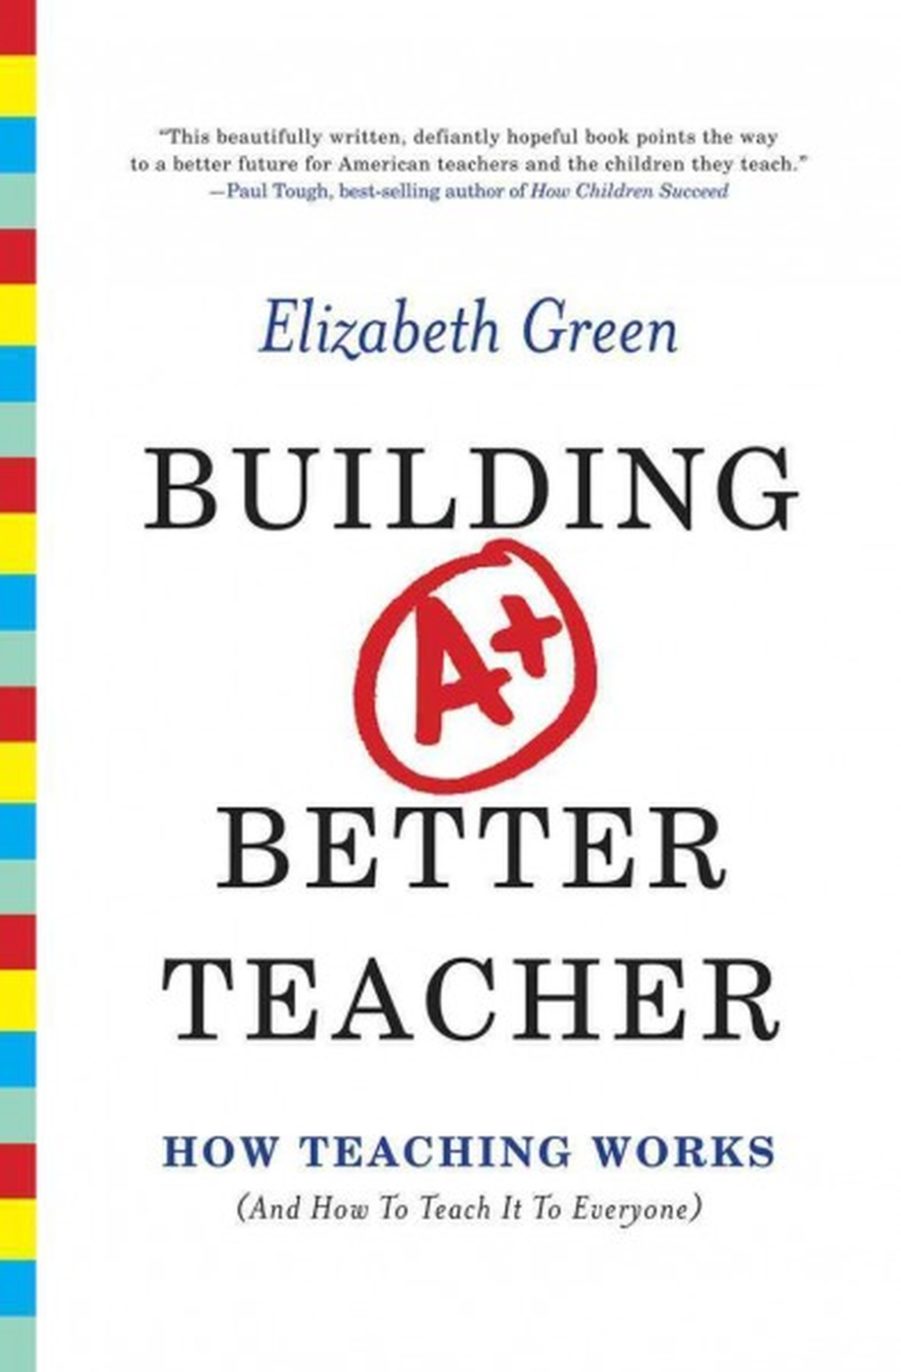 Pedagogy First A Note On Elizabeth Green S Building A Better Teacher The Jose Vilson